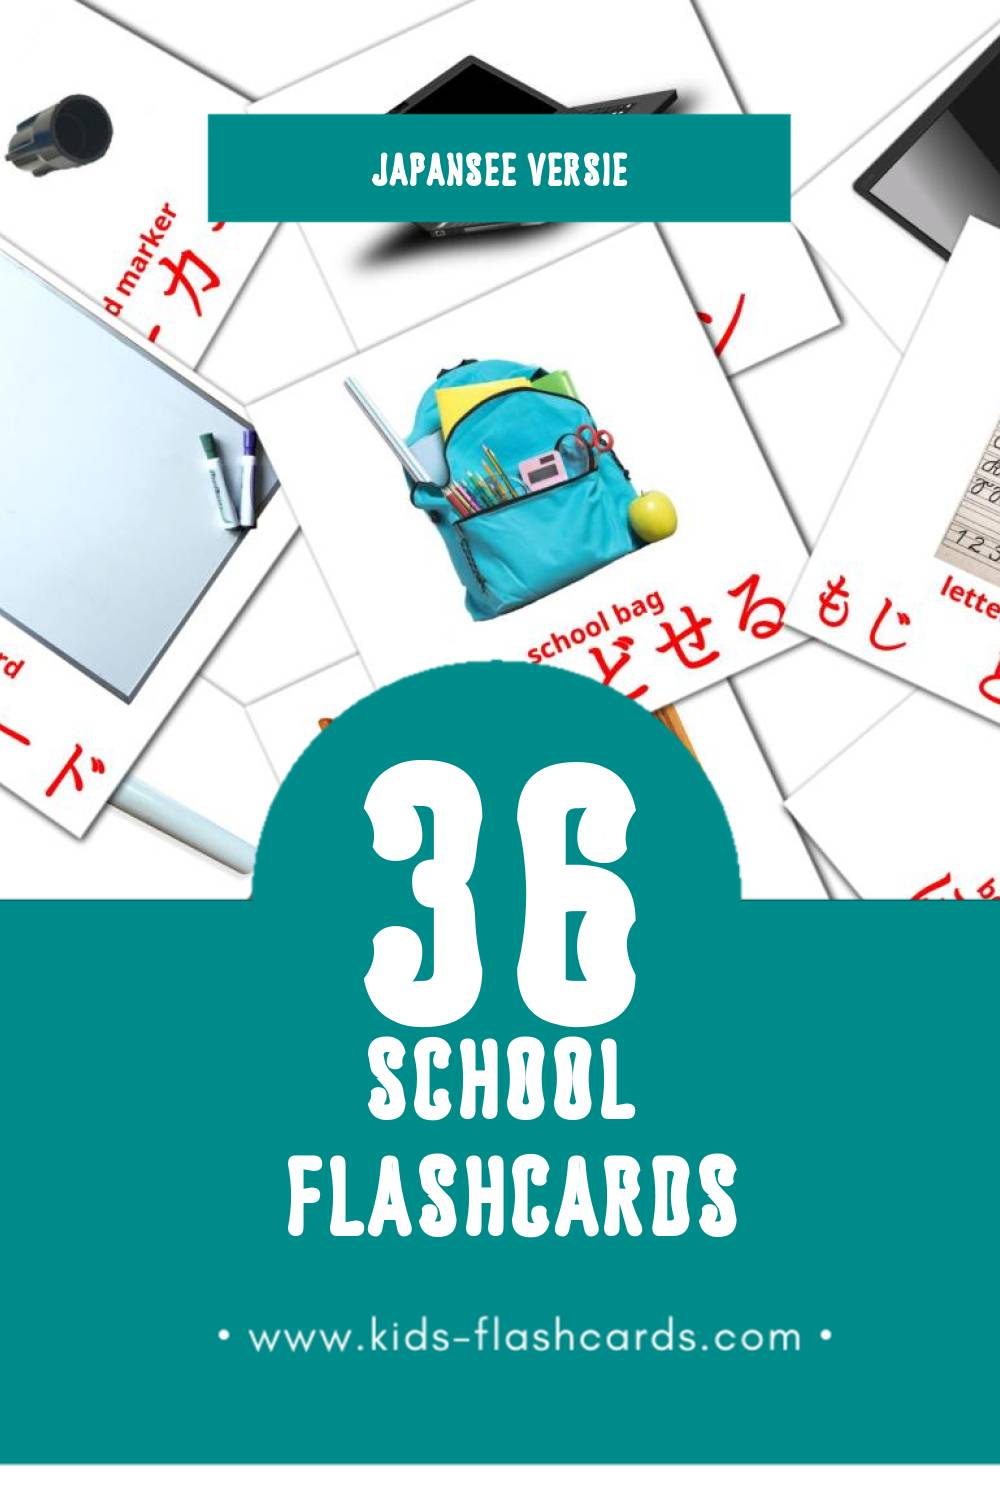 Visuele がっこう Flashcards voor Kleuters (36 kaarten in het Japanse)